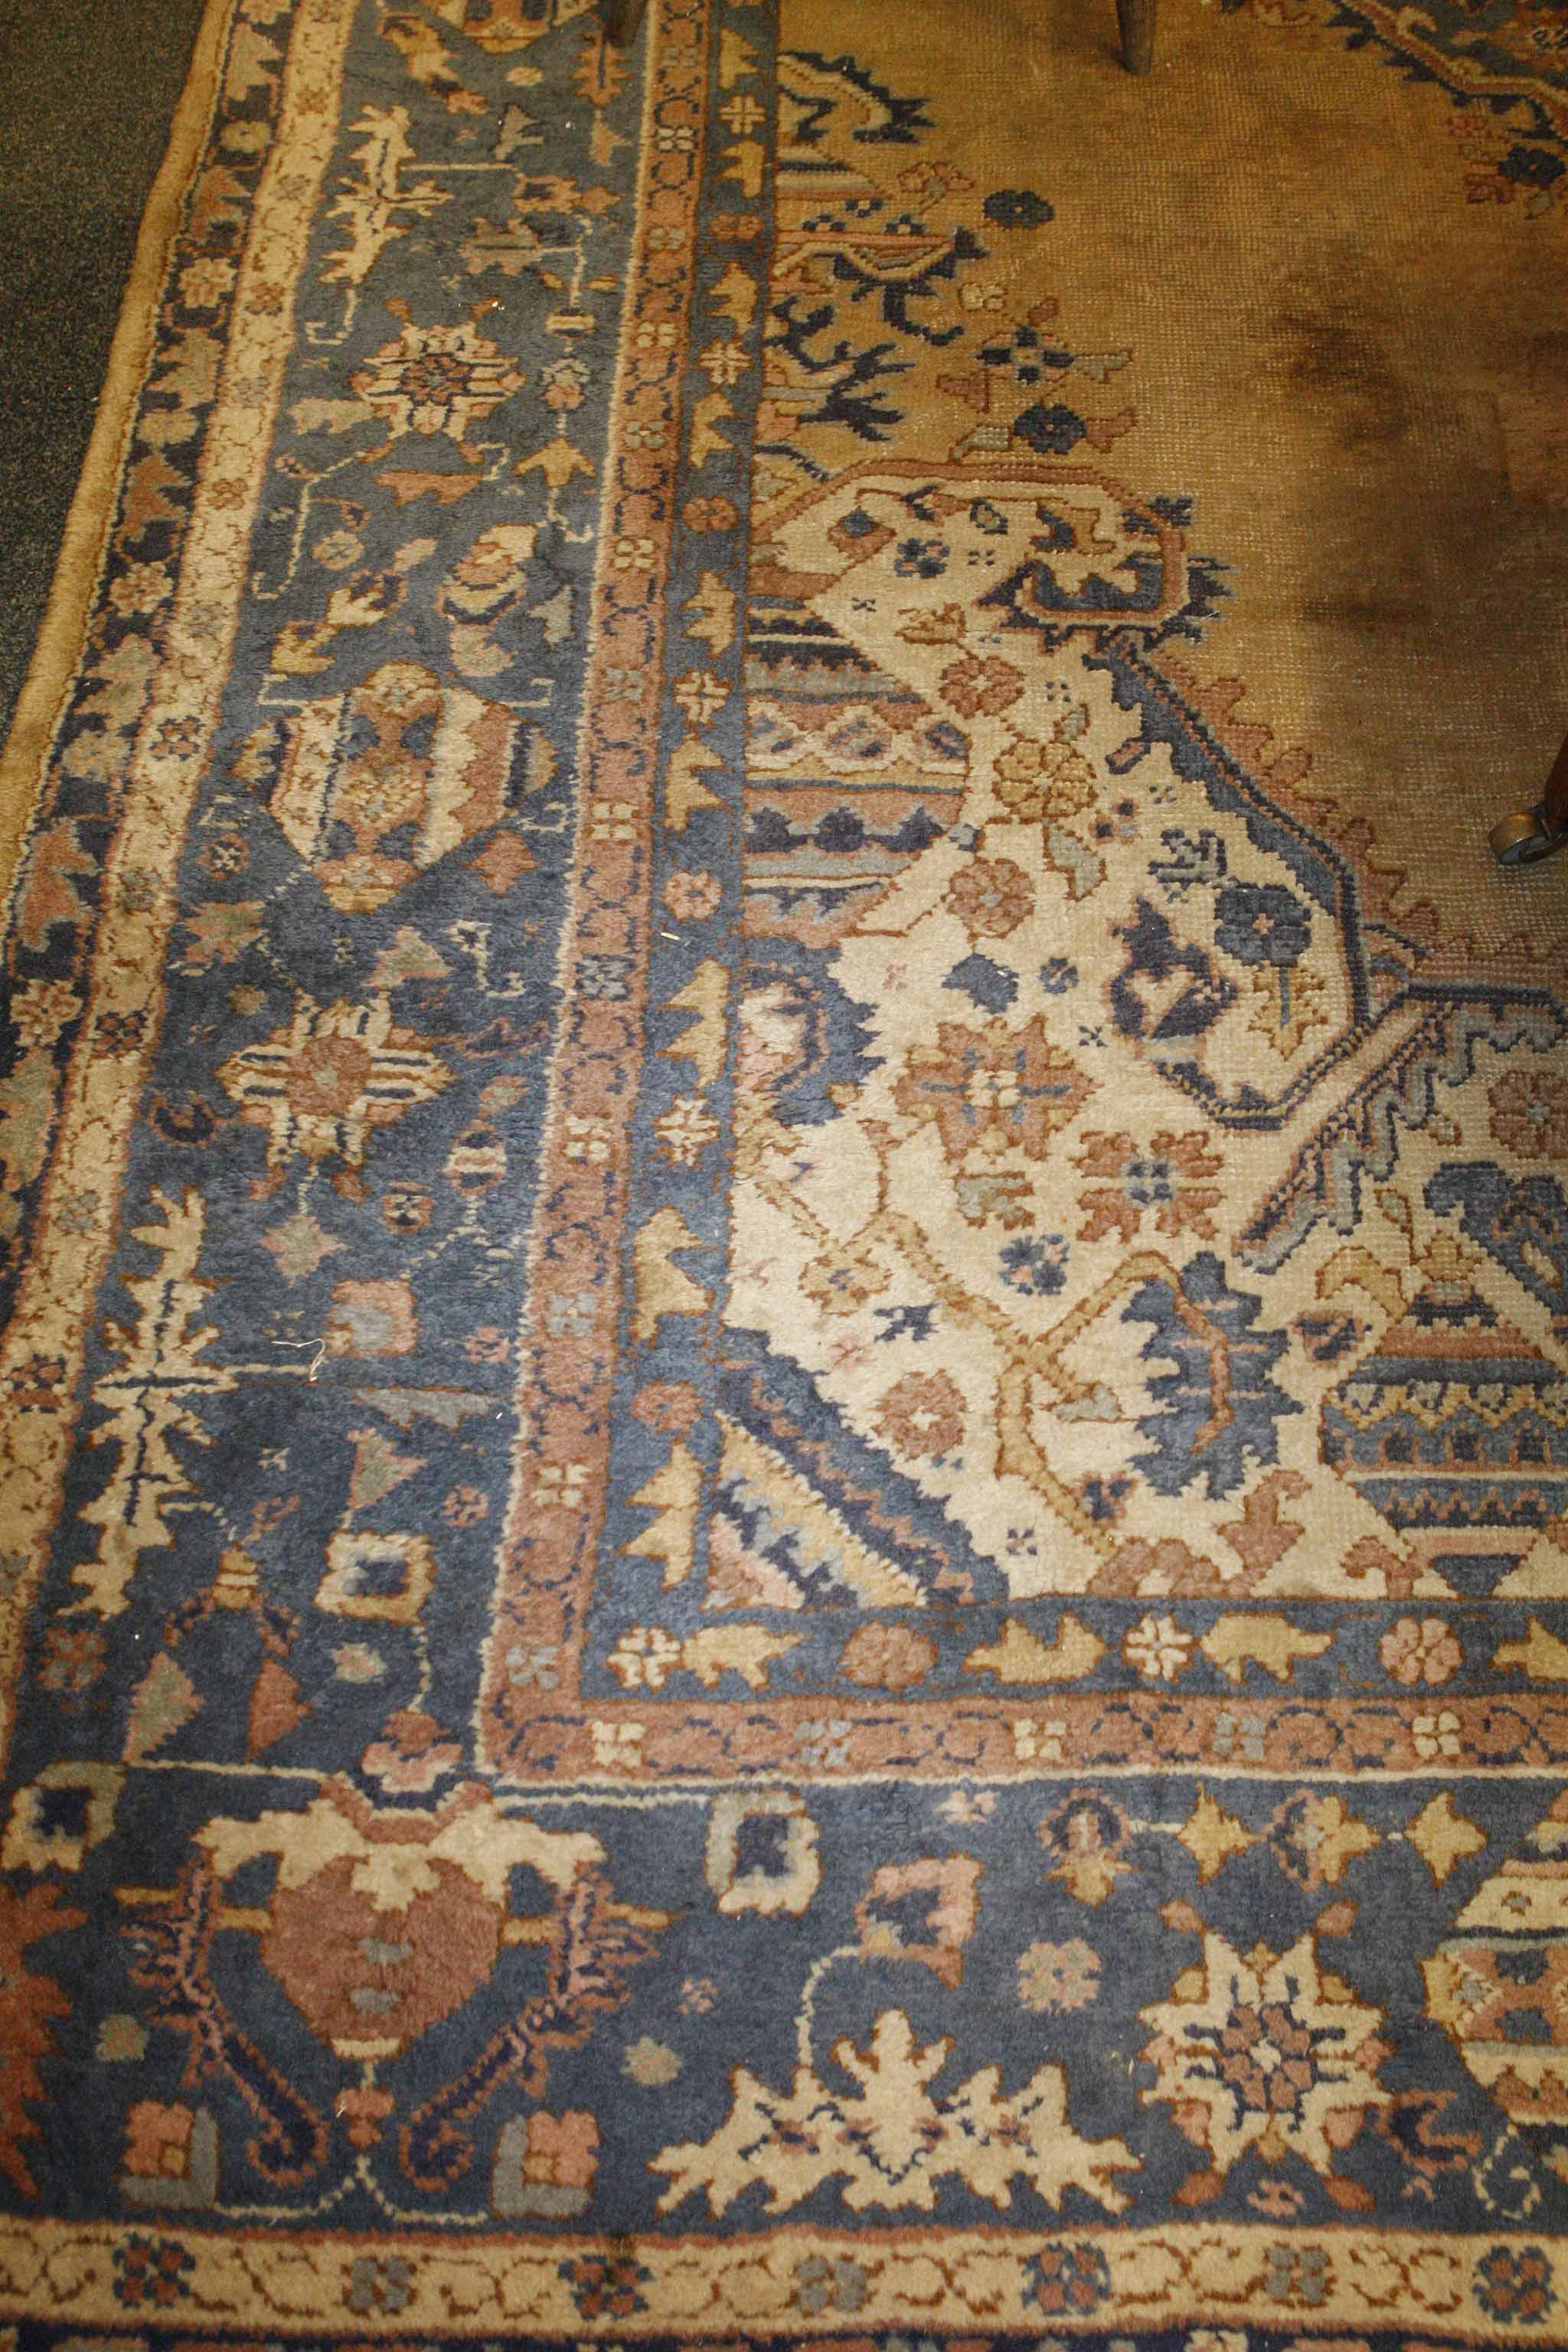 An antique Oushak carpet. 3 x 4m